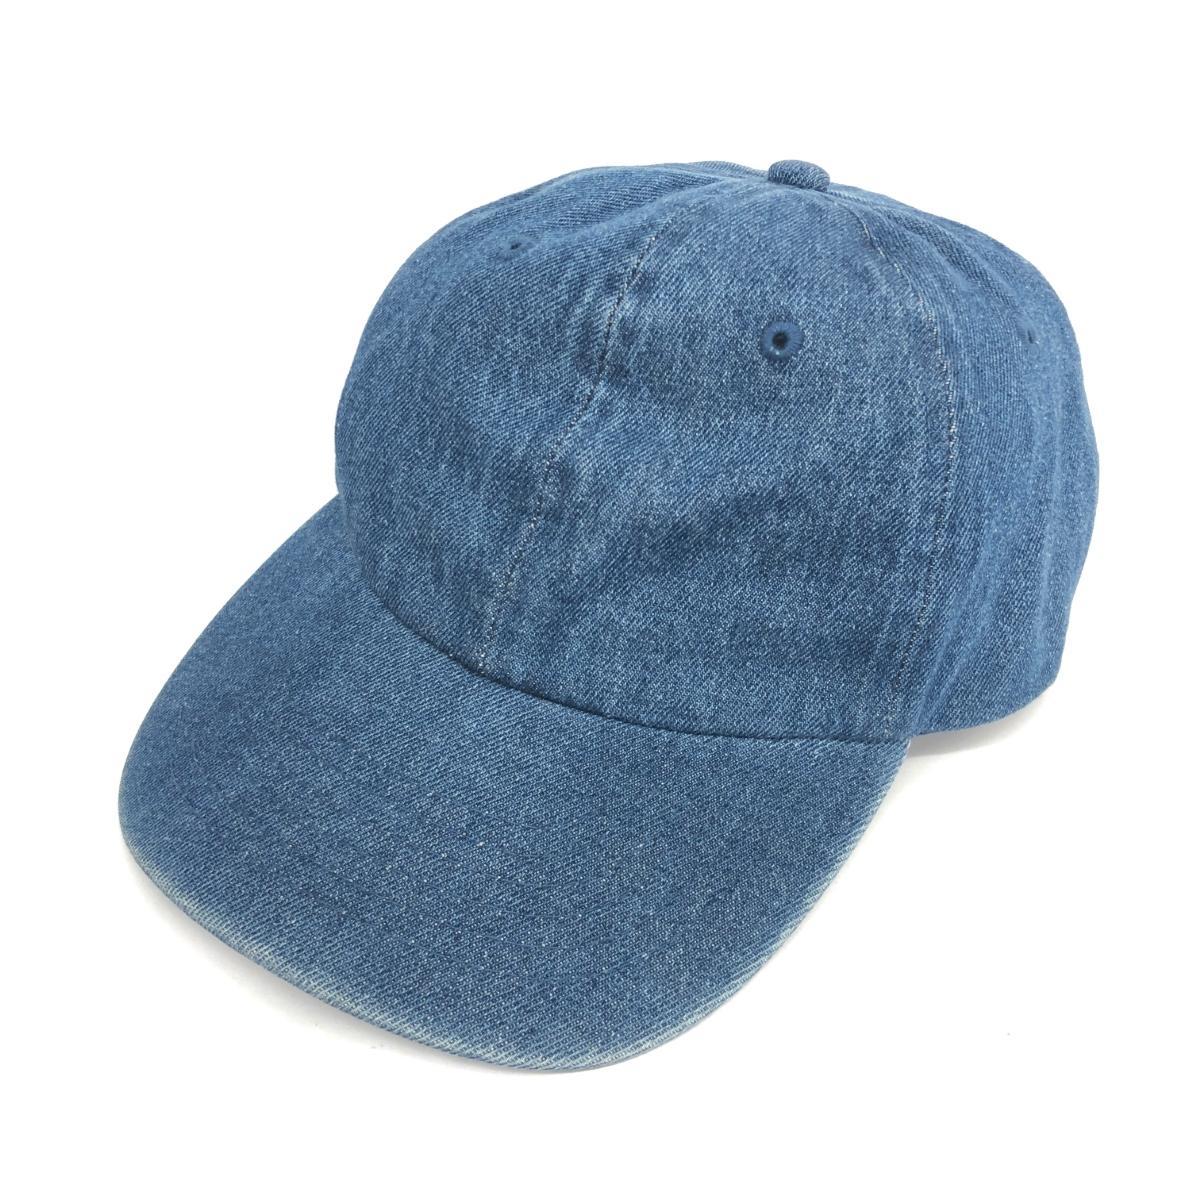 良好◆NEWHATTAN ニューハッタン キャップ ◆ ブルー デニム レディース 帽子 ハット hat 服飾小物_画像1